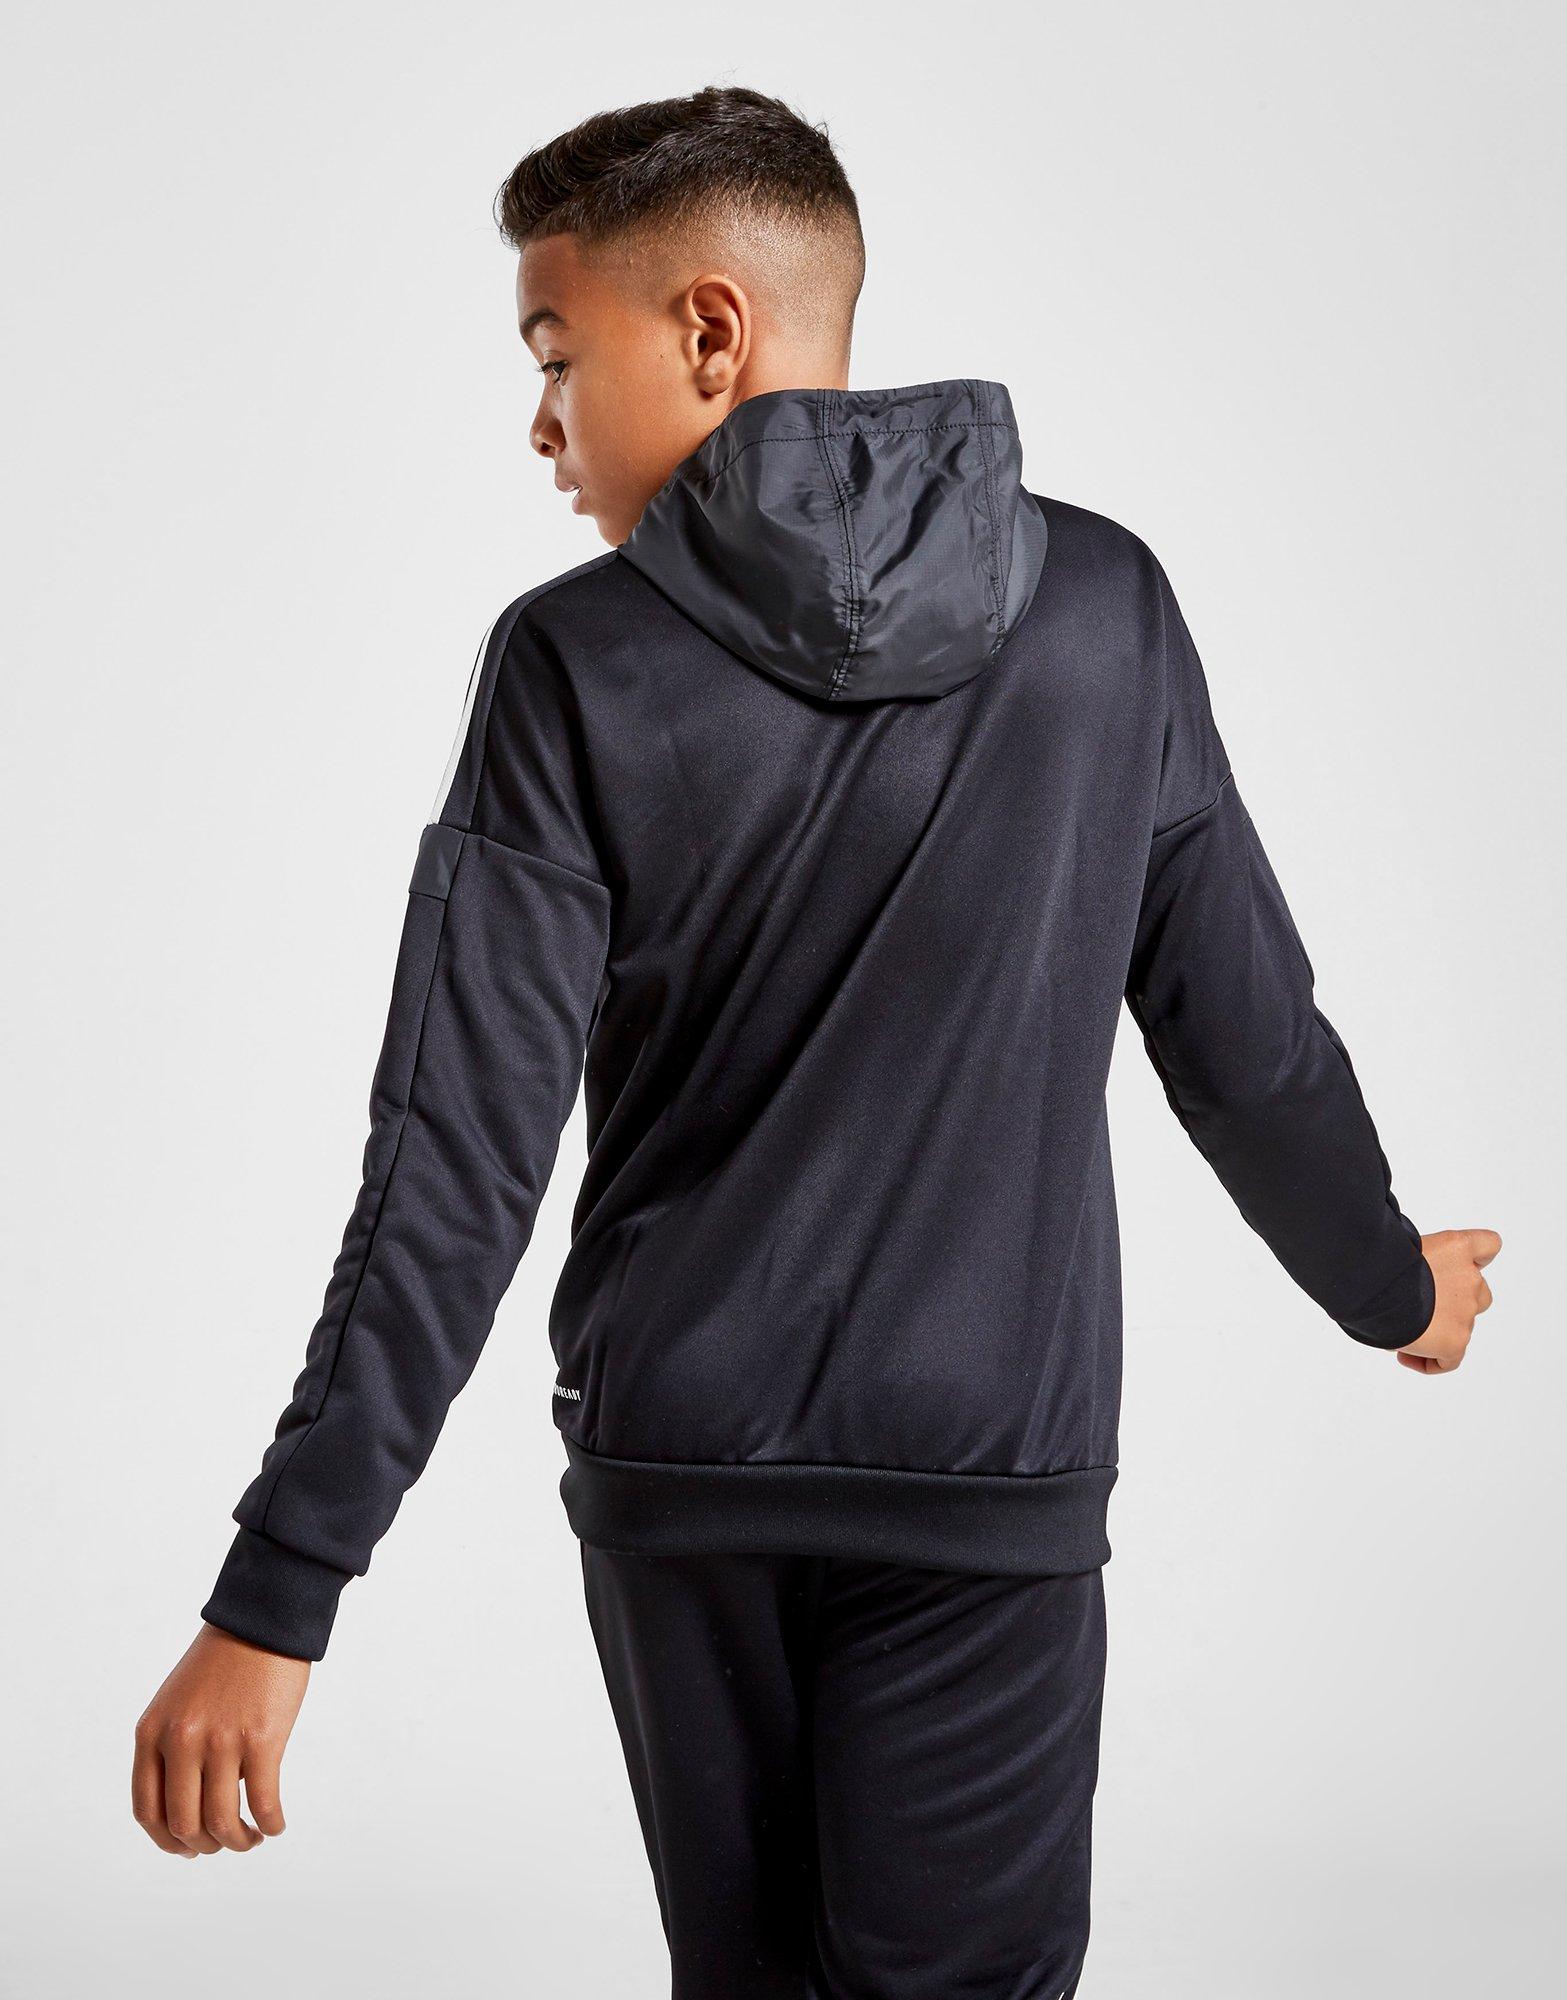 black adidas hoodie junior